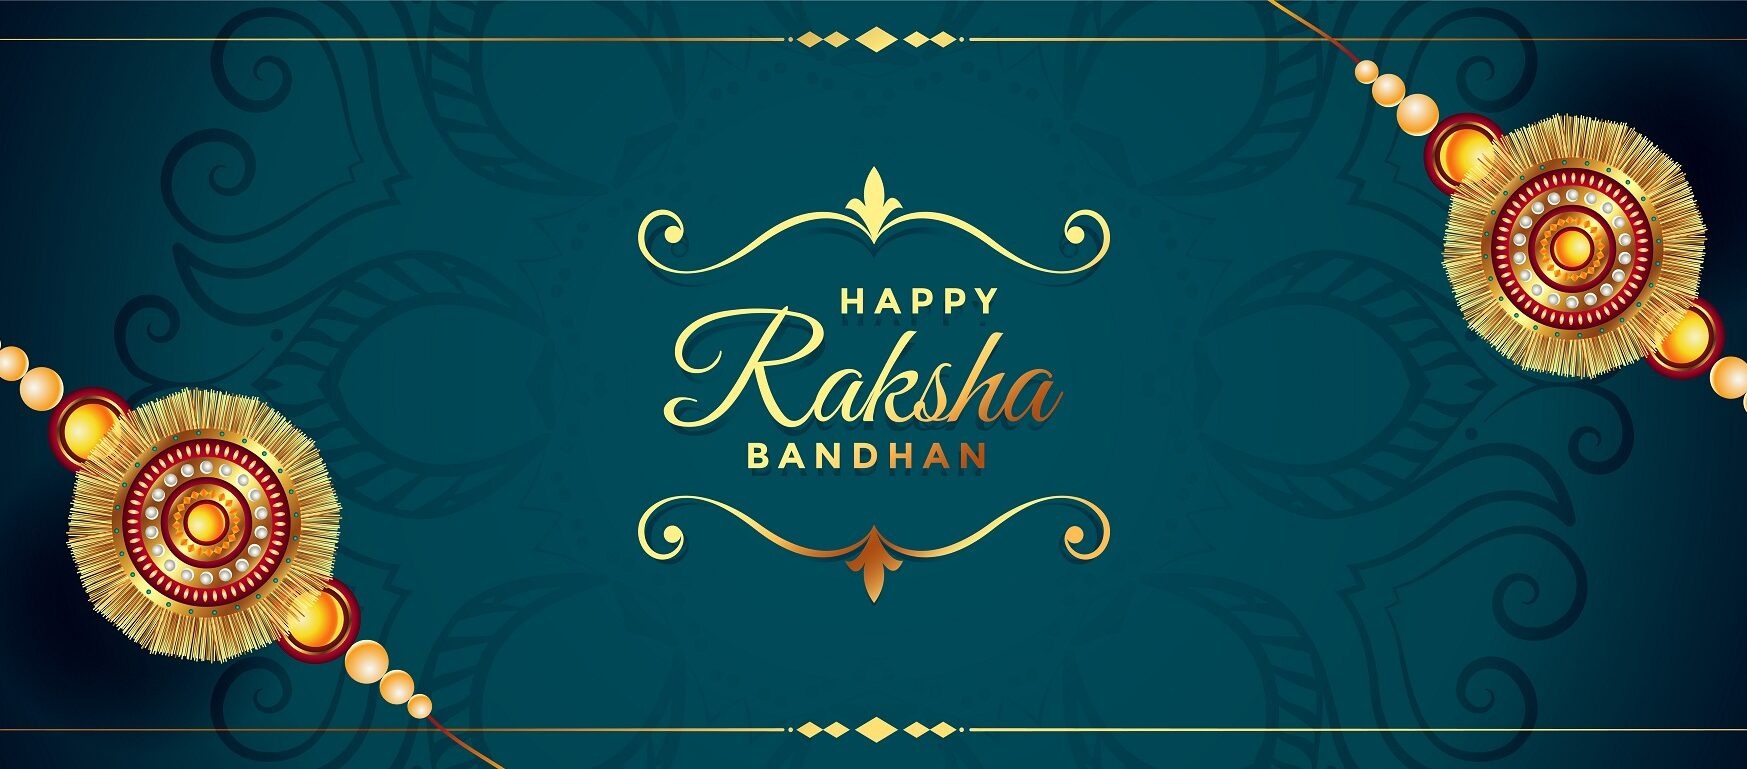 Happy Raksha bandhan 